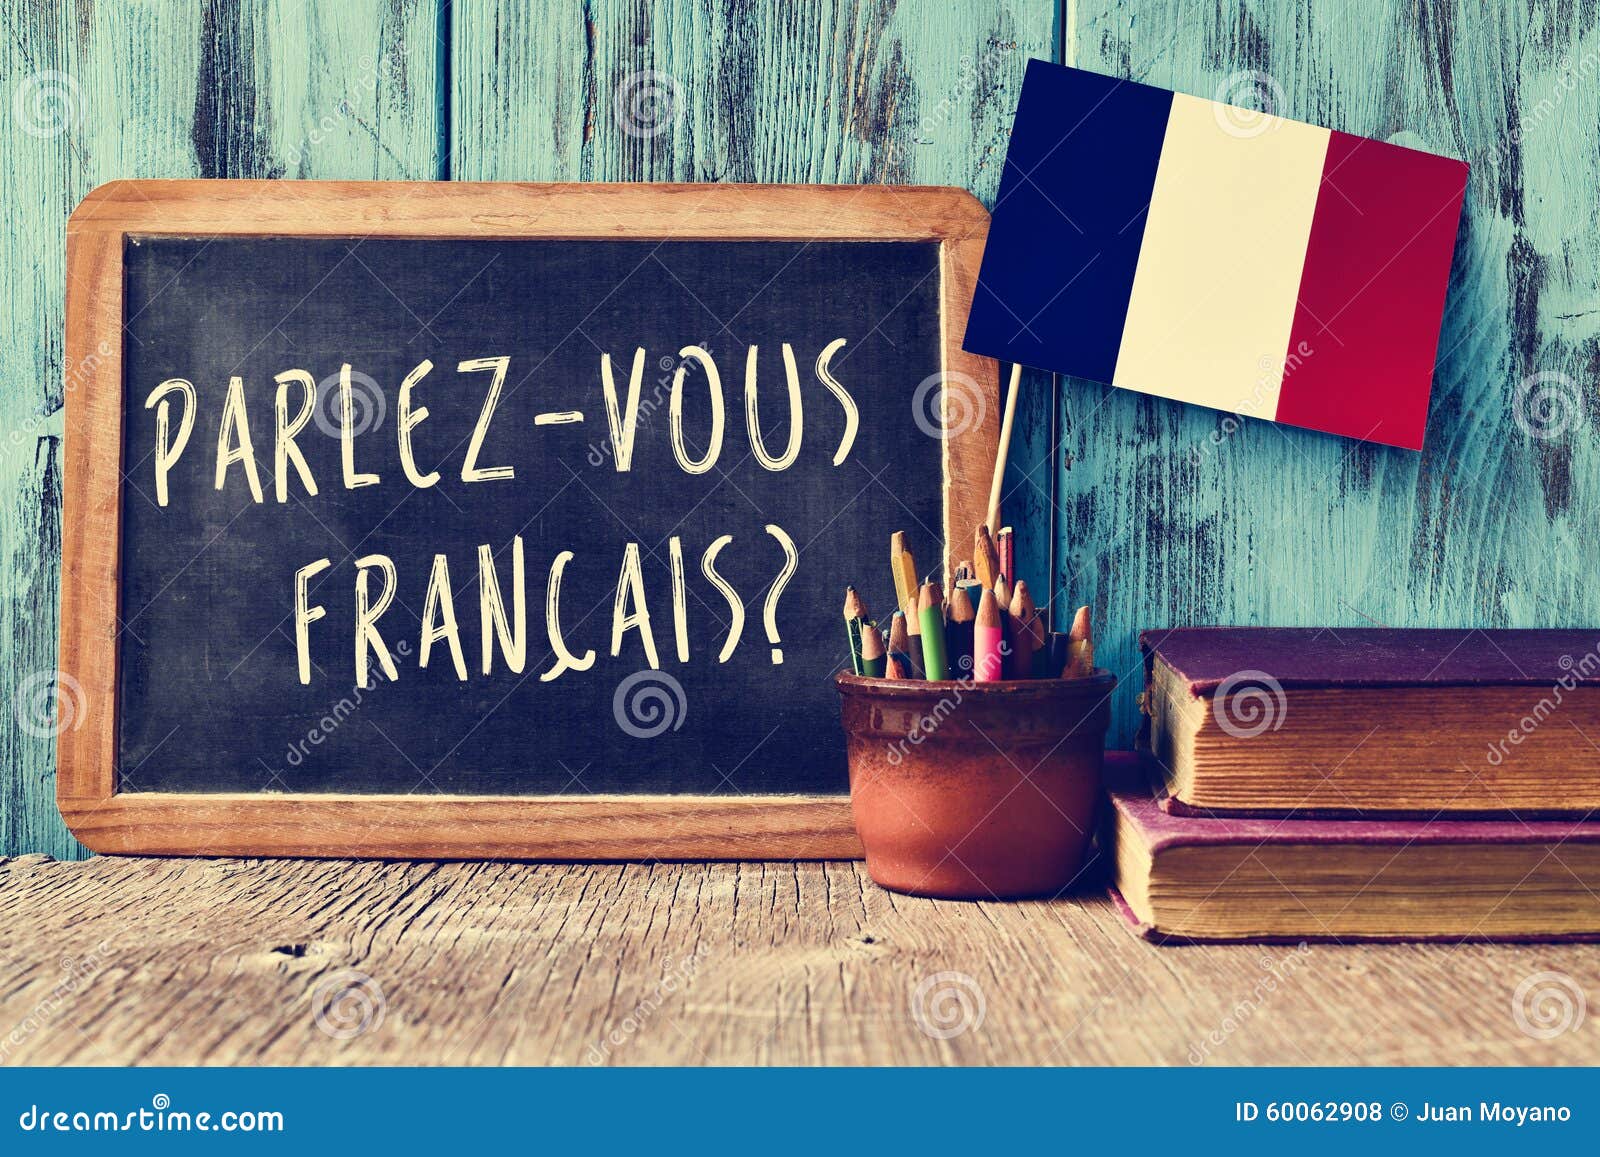 Question Parlez-vous Francais? Do You Speak French? Stock Photo - Image ...